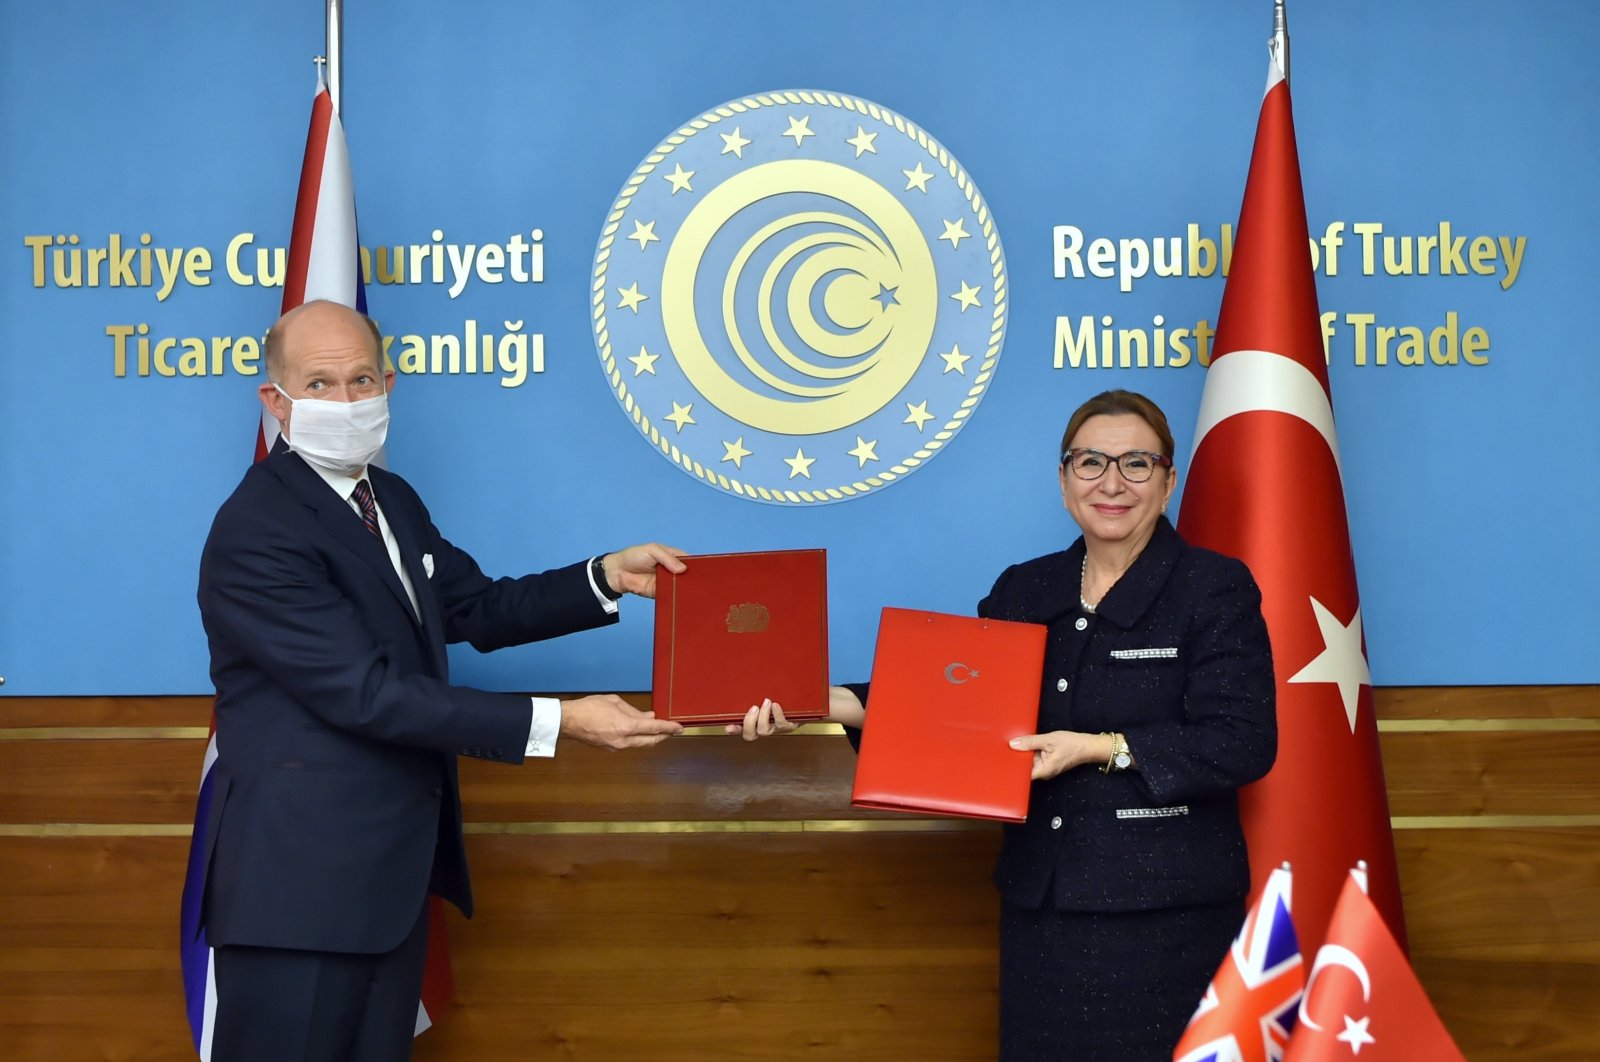 Οι σχέσεις Τουρκίας-ΗΒ μετά το Brexit δείχνουν σημάδια νέας στρατηγικής συνεργασίας